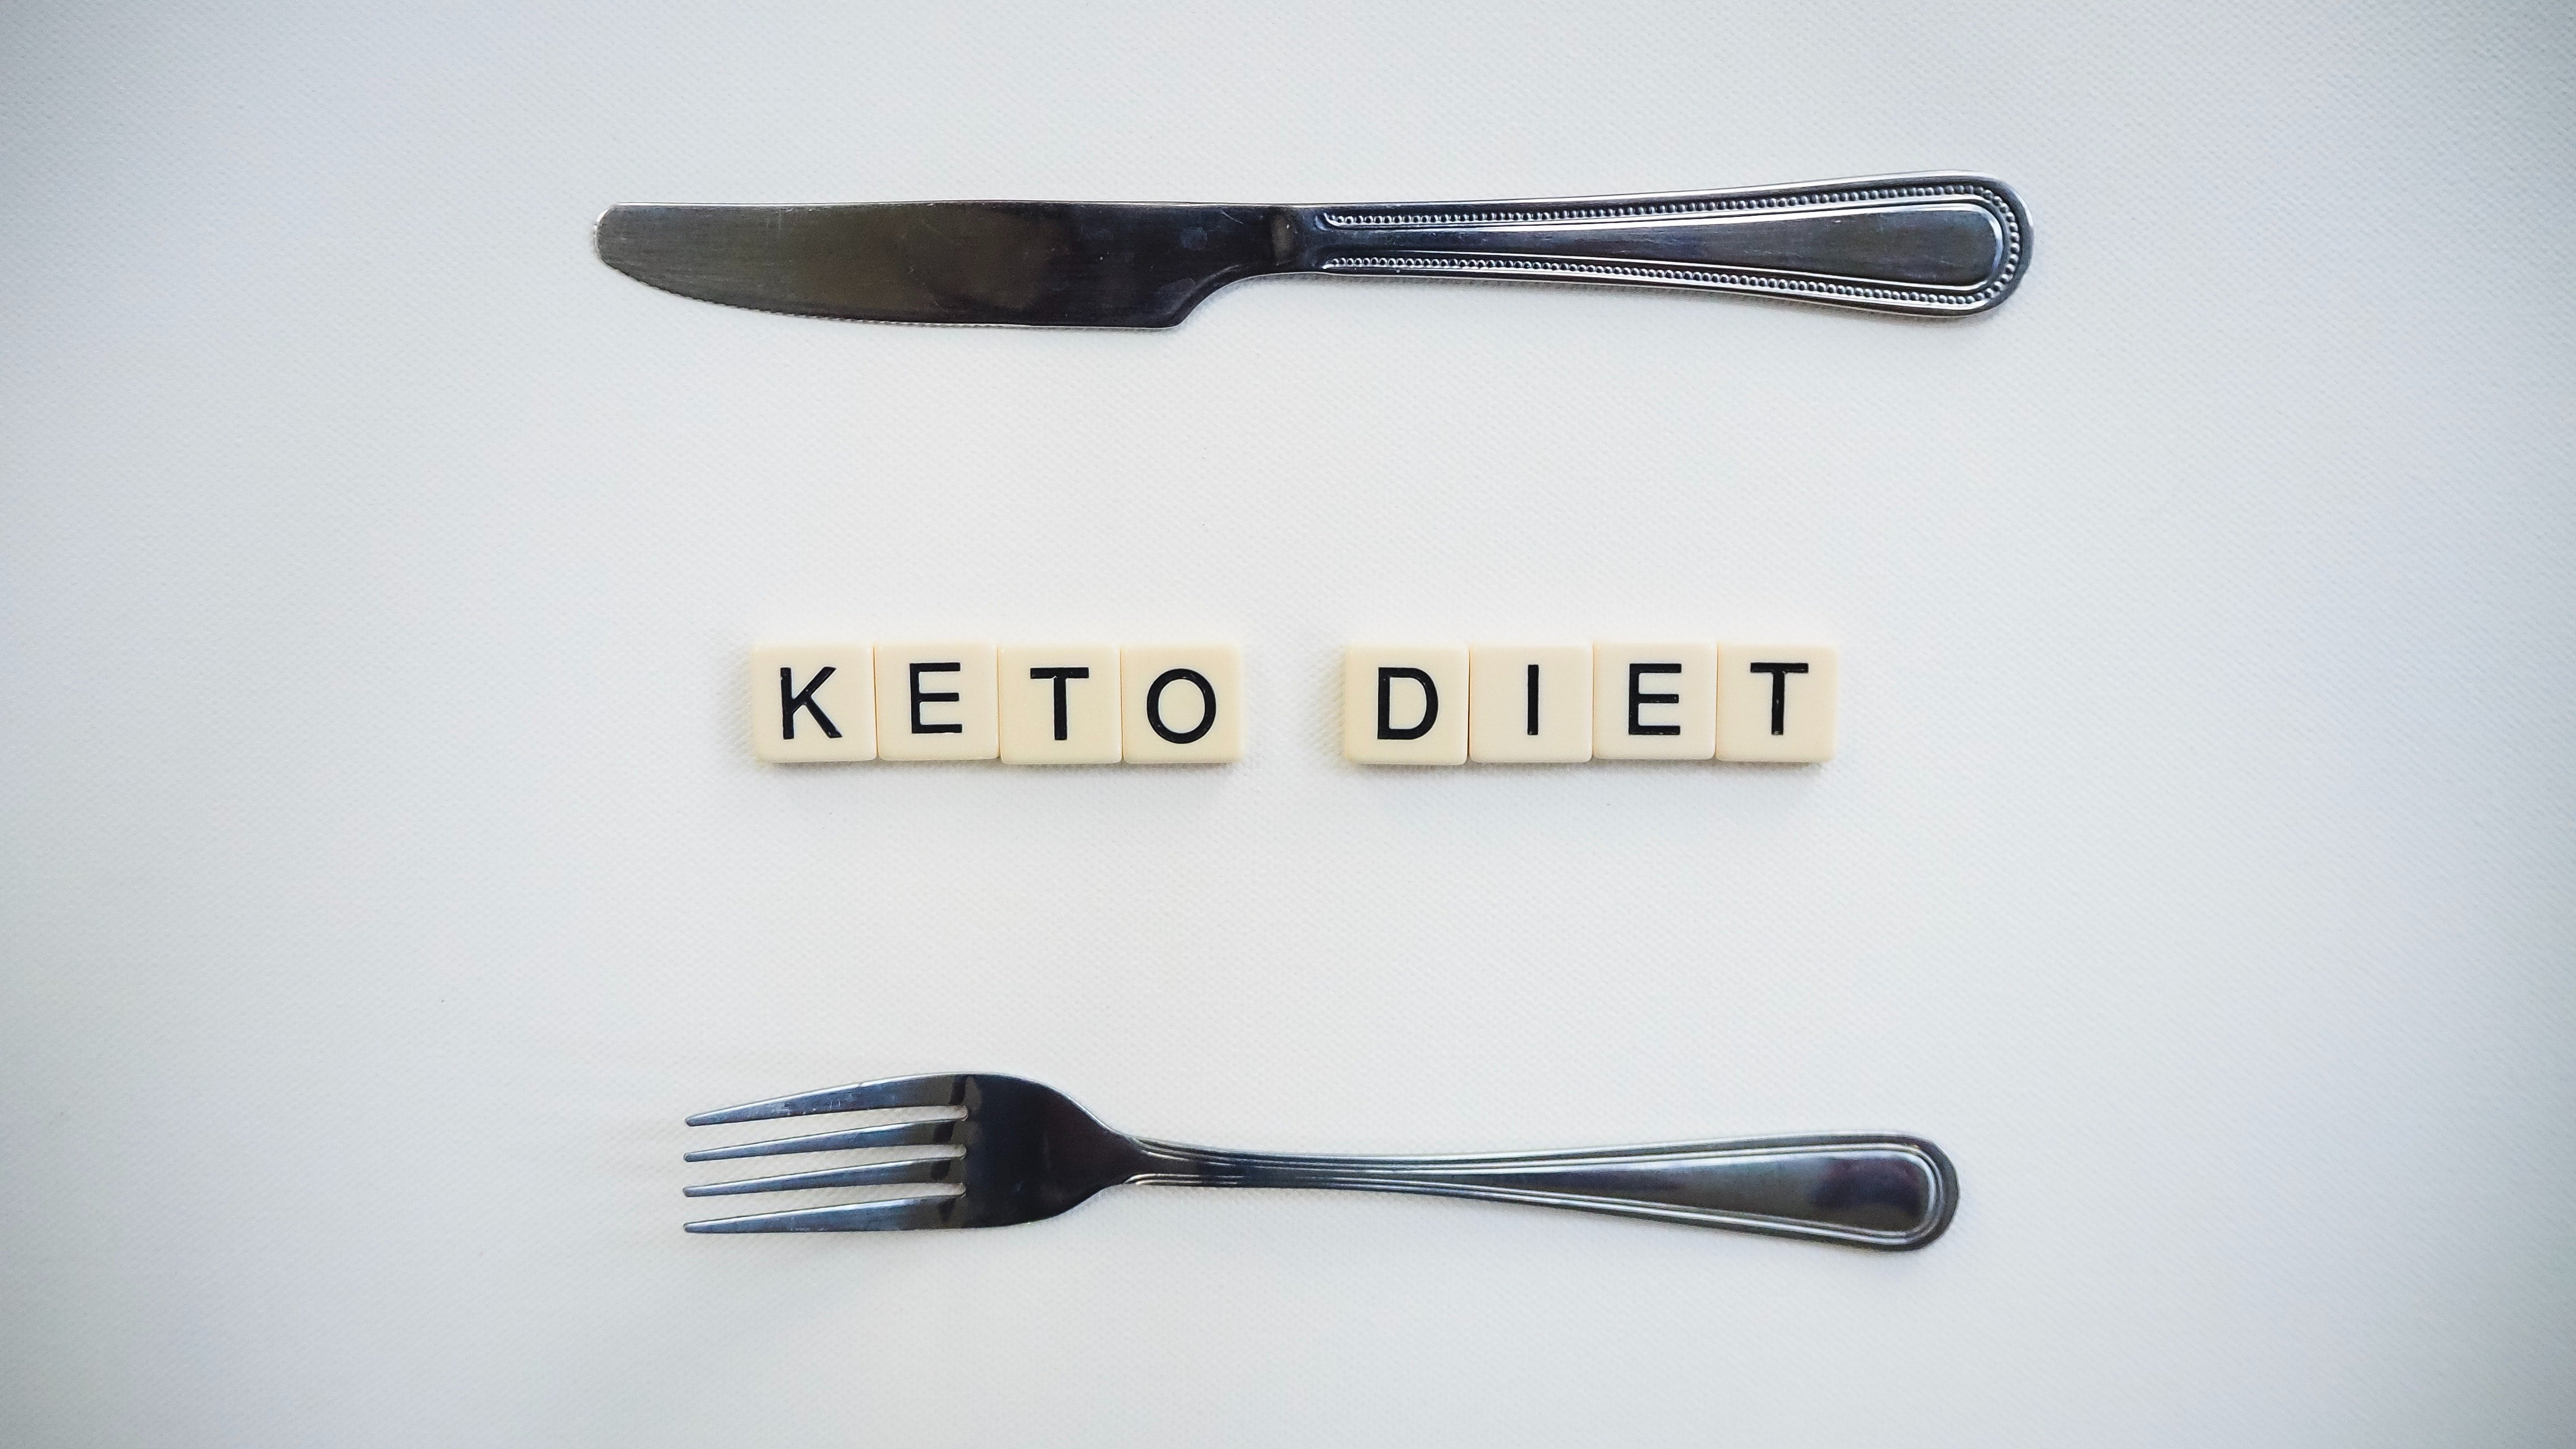 "keto diet" spelt out in scrabble letters 